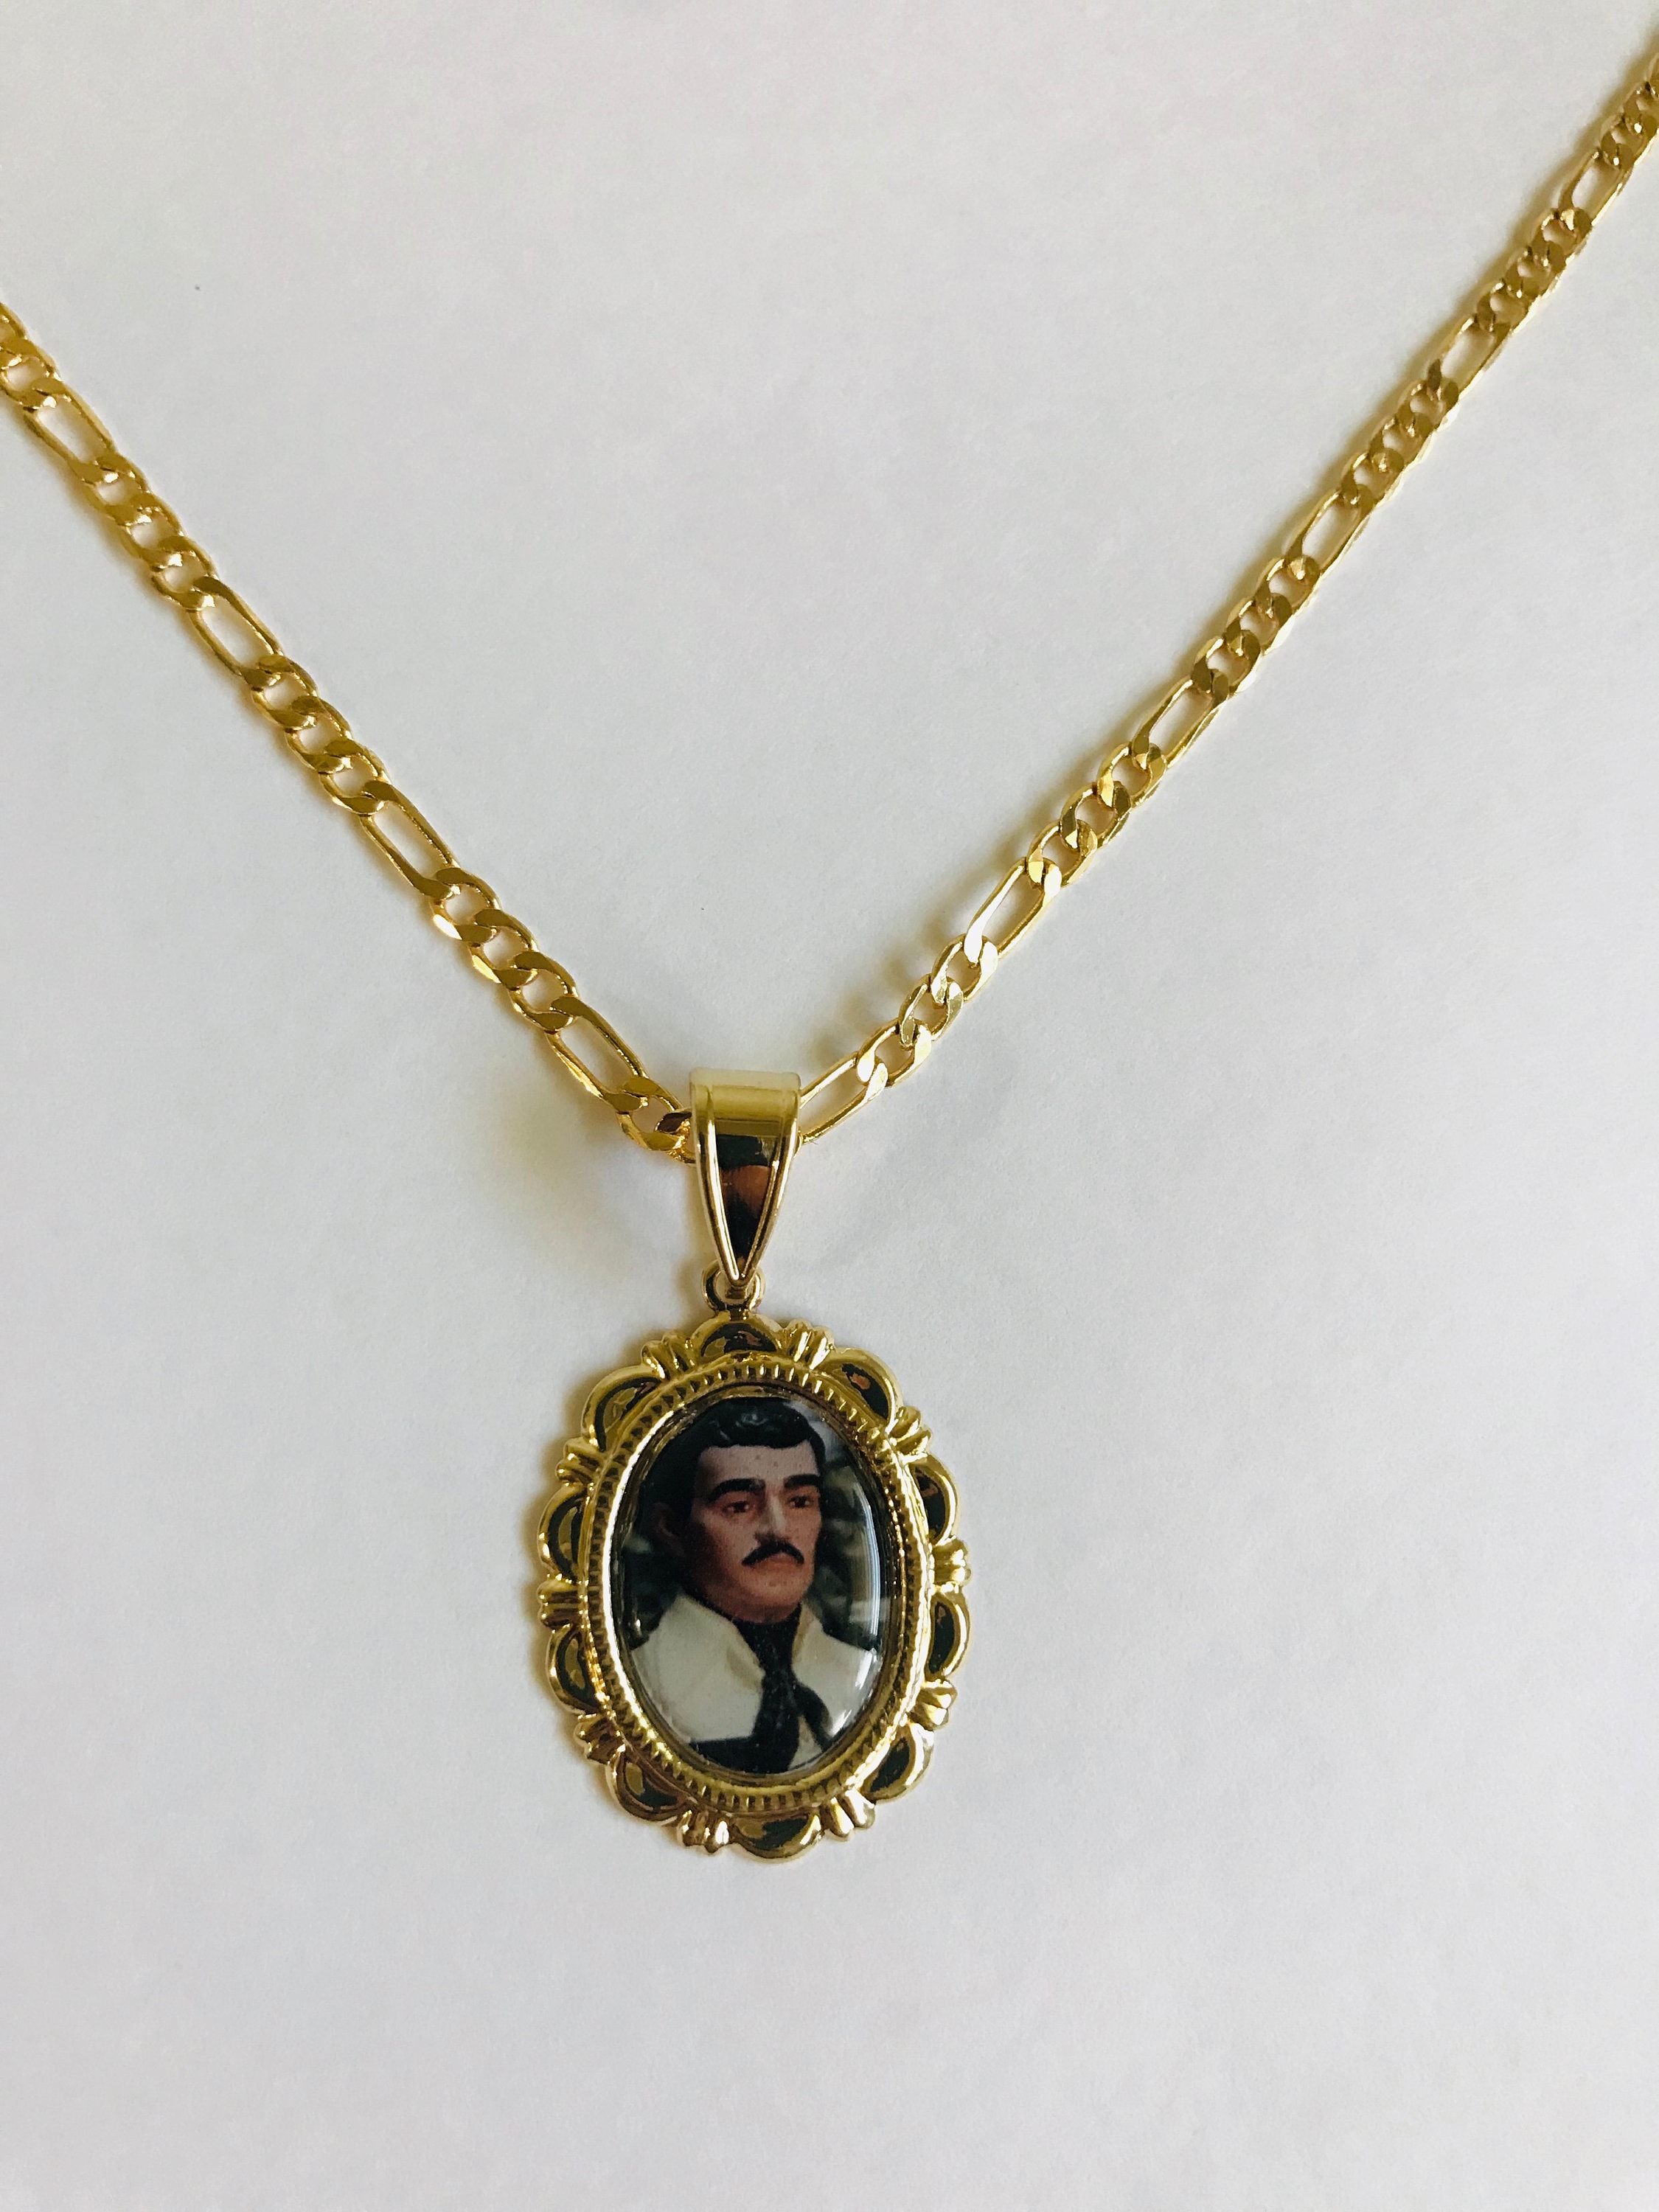 Jesus Malverde Medalla y Cadena Figaro Gold Filled - Etsy